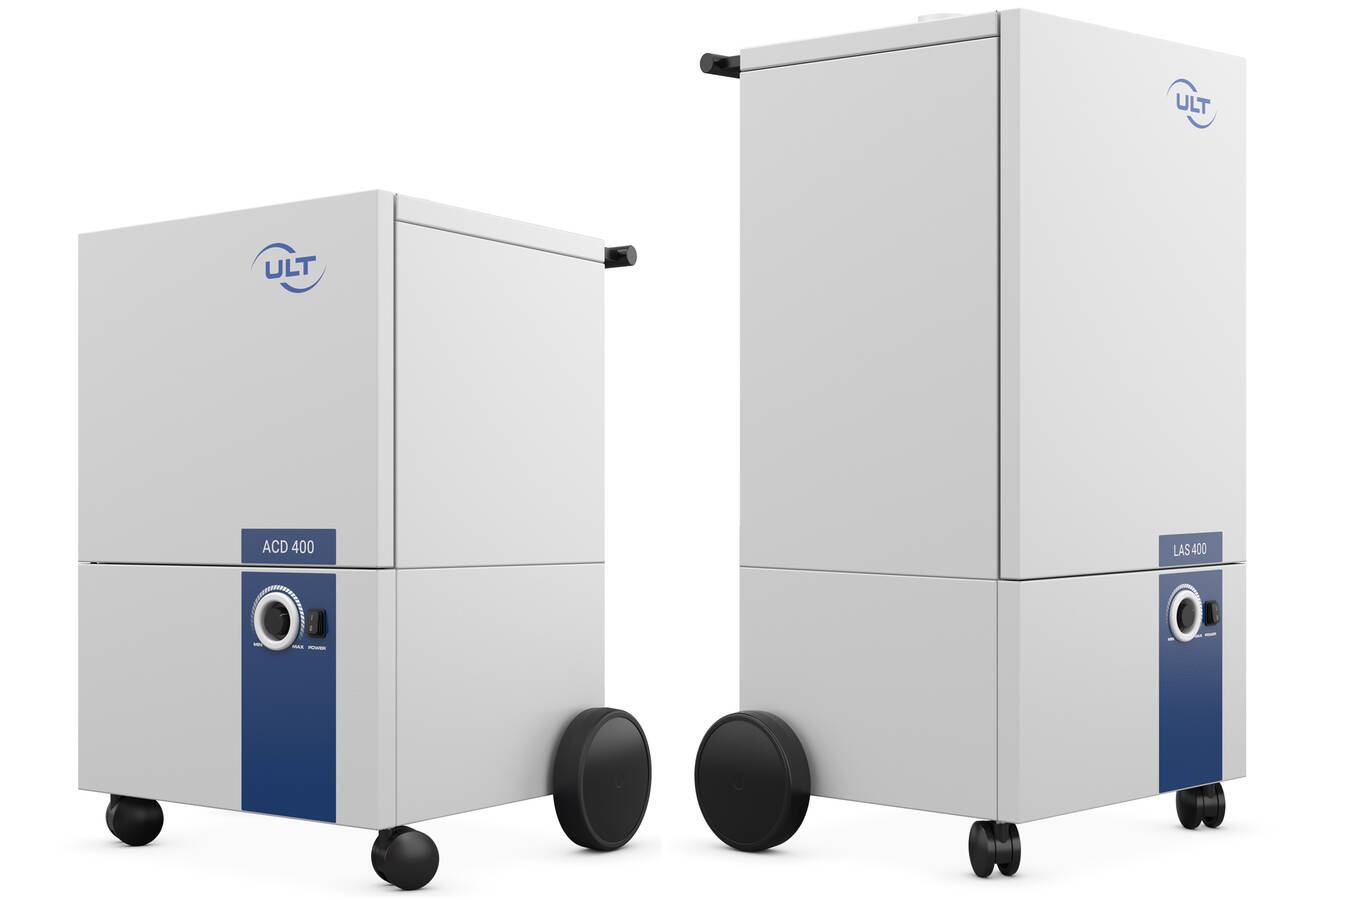 Neue Produktfamilie modularer Absaug- und Filteranlagen  Die neue Produktserie ULT 400.1 bietet energieeffizienten und leisen Betrieb bei hoher Flexibilität und Modularität - Beseitigung verschiedenster Emissionen